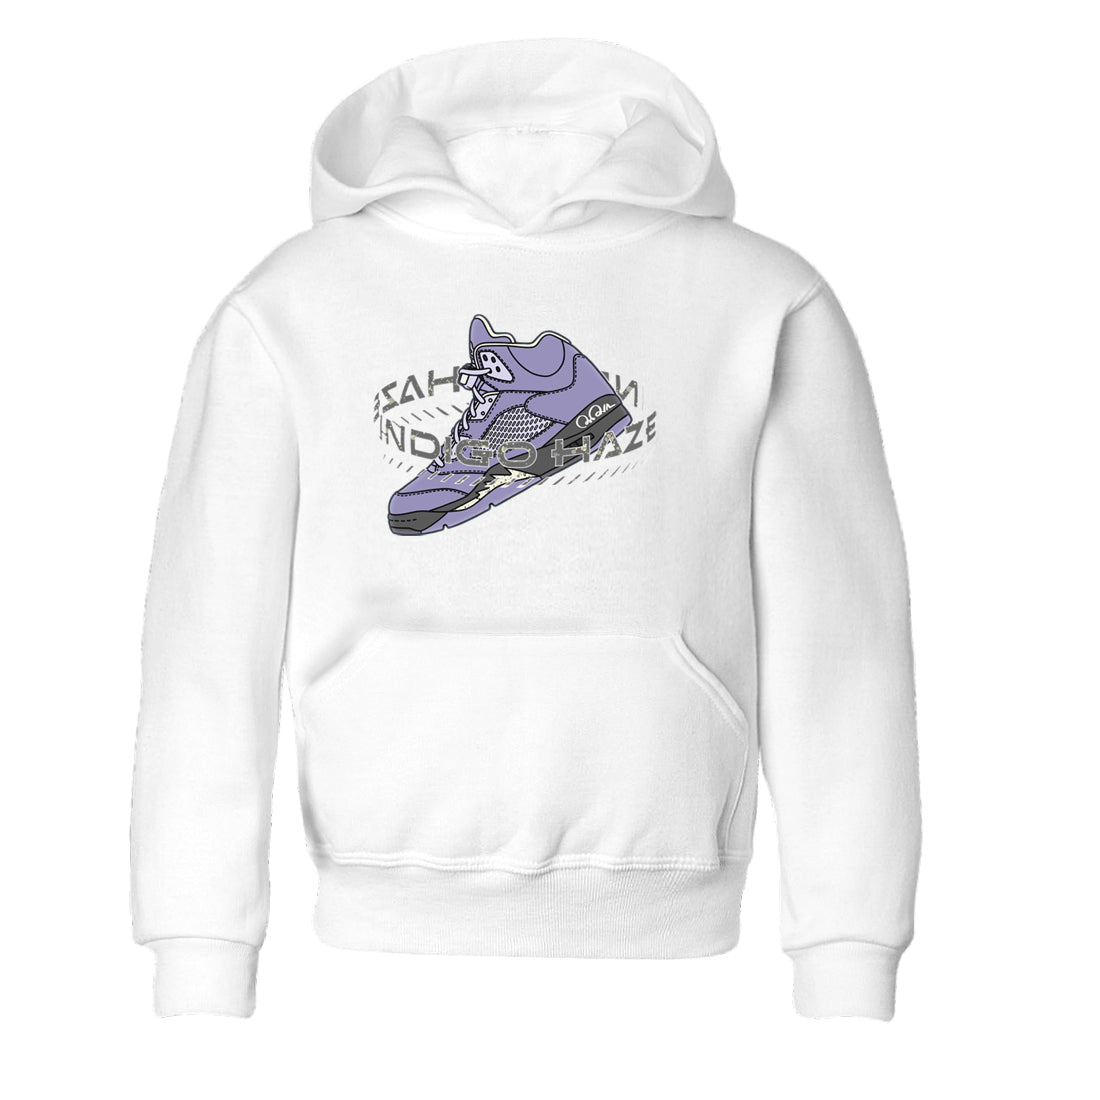 Air Jordan 5 Indigo Haze Sneaker Match Tees Warping Space Sneaker Tees AJ5 Indigo Haze Sneaker Release Tees Kids Shirts White 2